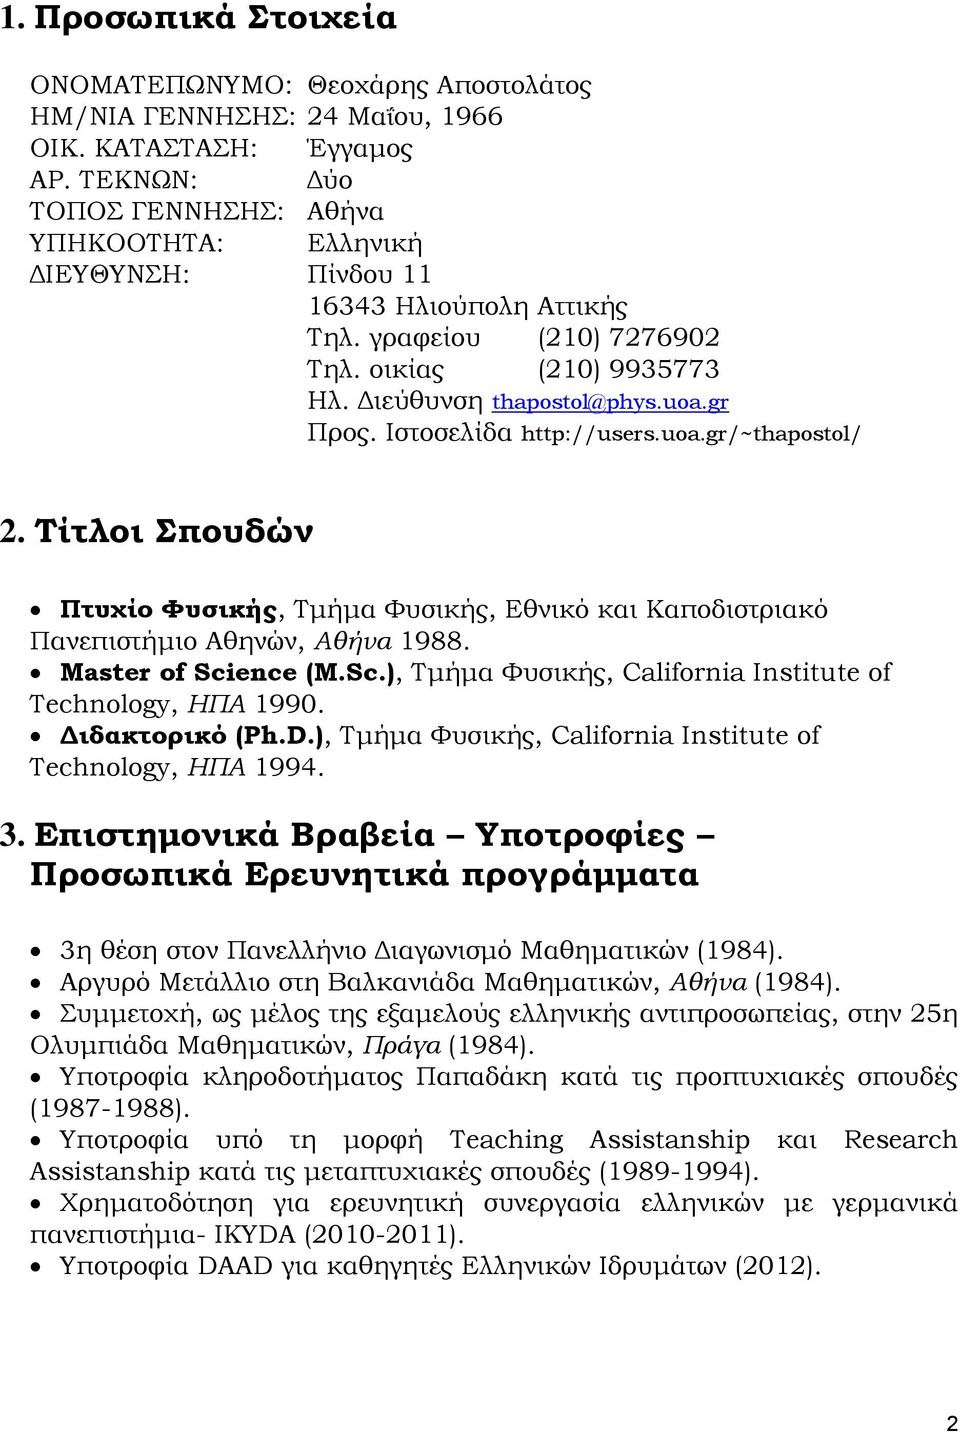 Ιστοσελίδα http://users.uoa.gr/~thapostol/ 2. Τίτλοι Σπουδών Πτυχίο Φυσικής, Τμήμα Φυσικής, Εθνικό και Καποδιστριακό Πανεπιστήμιο Αθηνών, Αθήνα 1988. Μaster of Sci